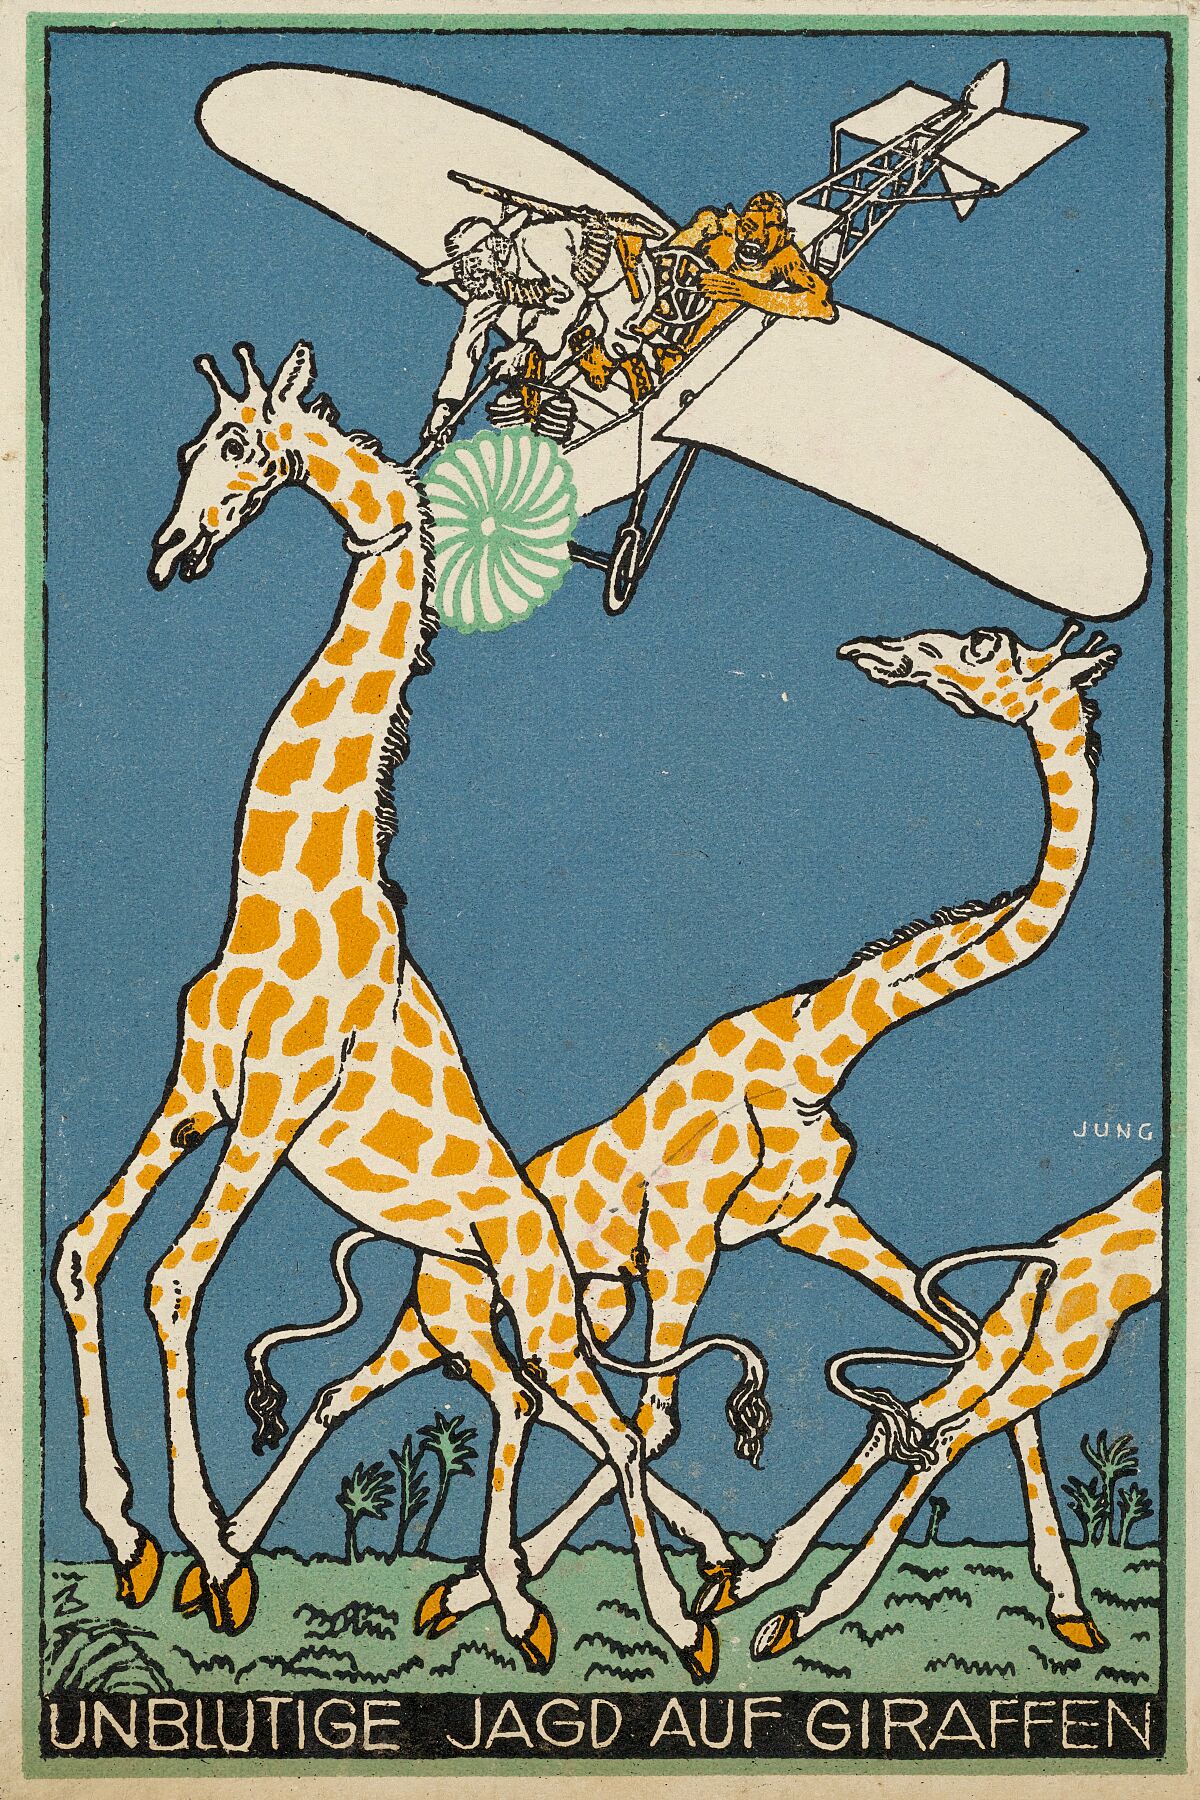 Bloodless Giraffe Hunt (Unblutige Jagd auf Giraffen) by Moriz Jung - 1911